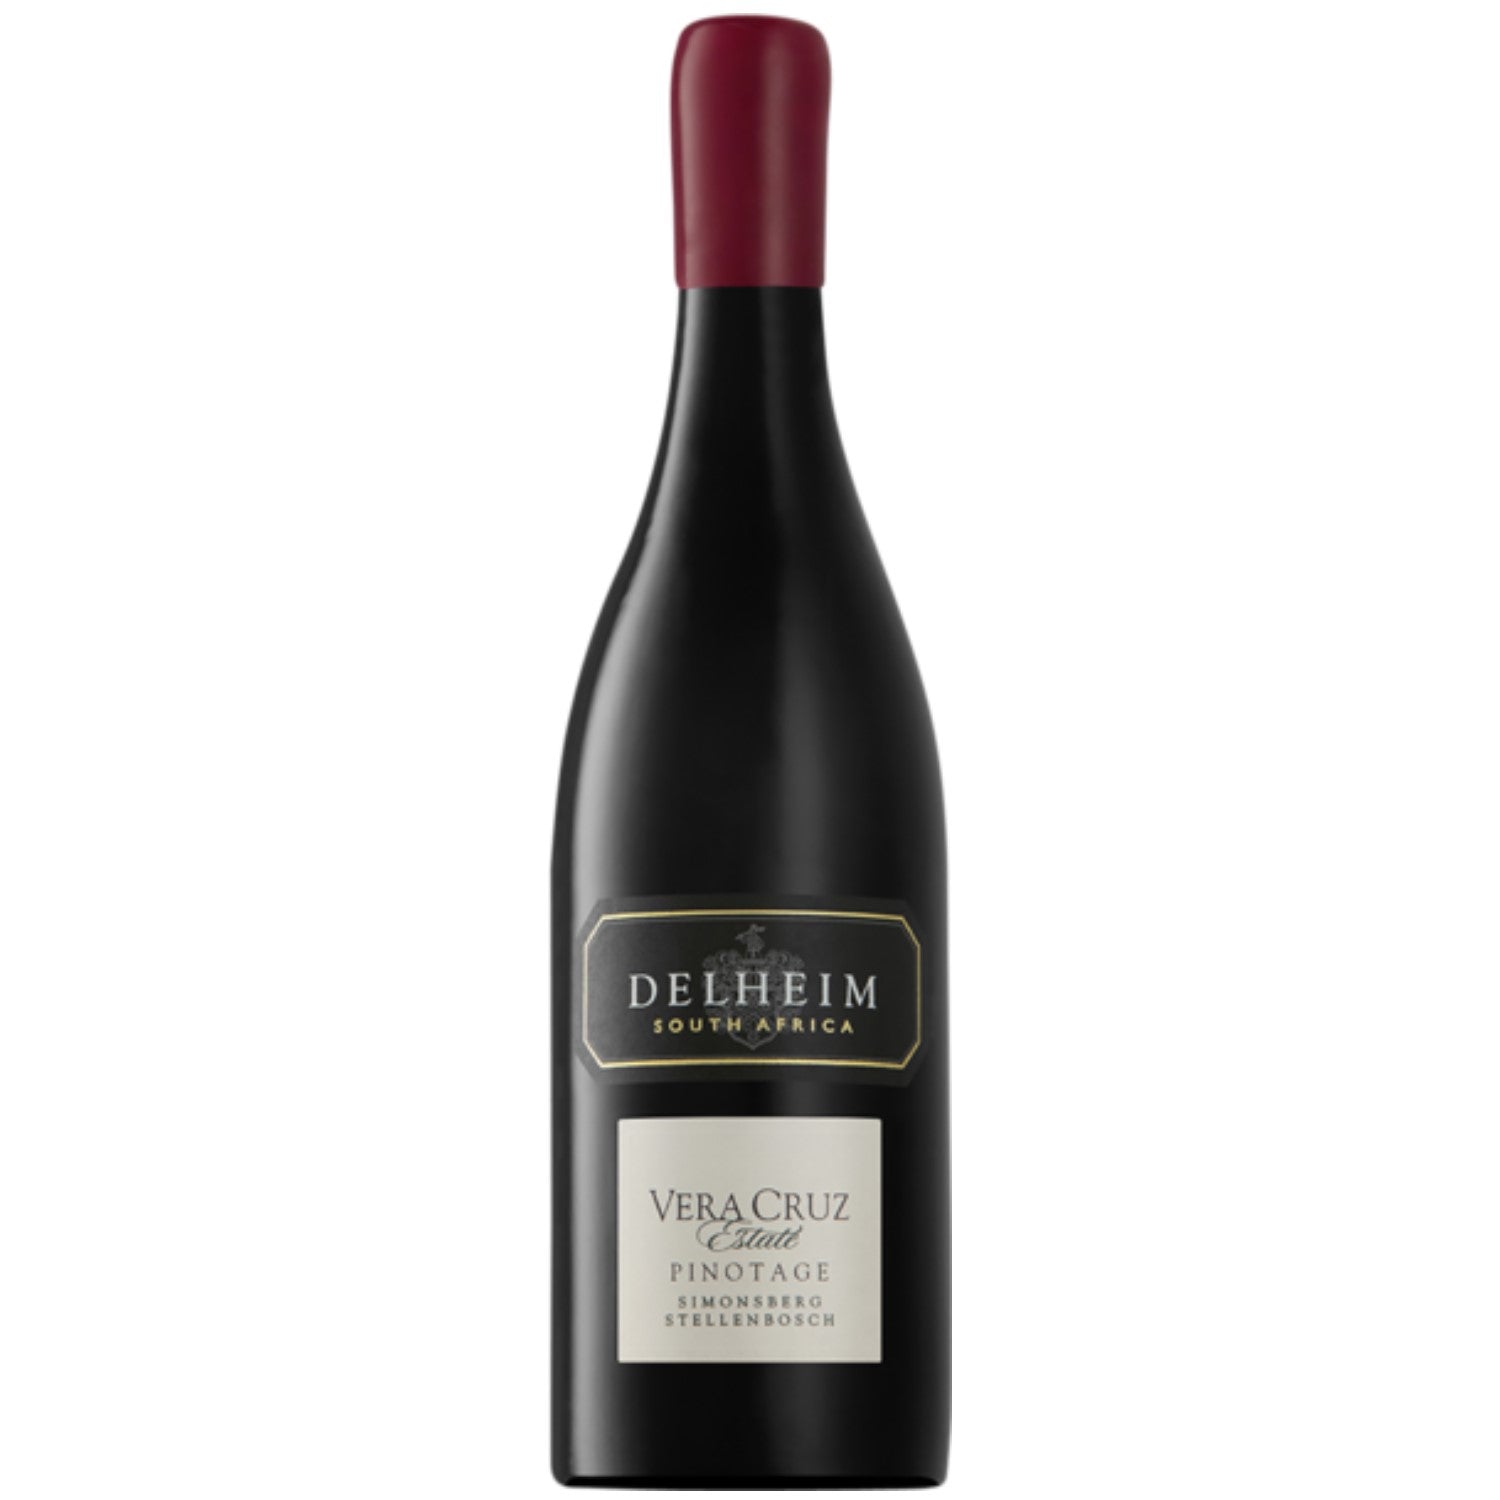 Delheim Vera Cruz Pinotage Simonsberg-Stellenbosch Rotwein Wein trocken Südafrika (3 x 0.75l) - Versanel -